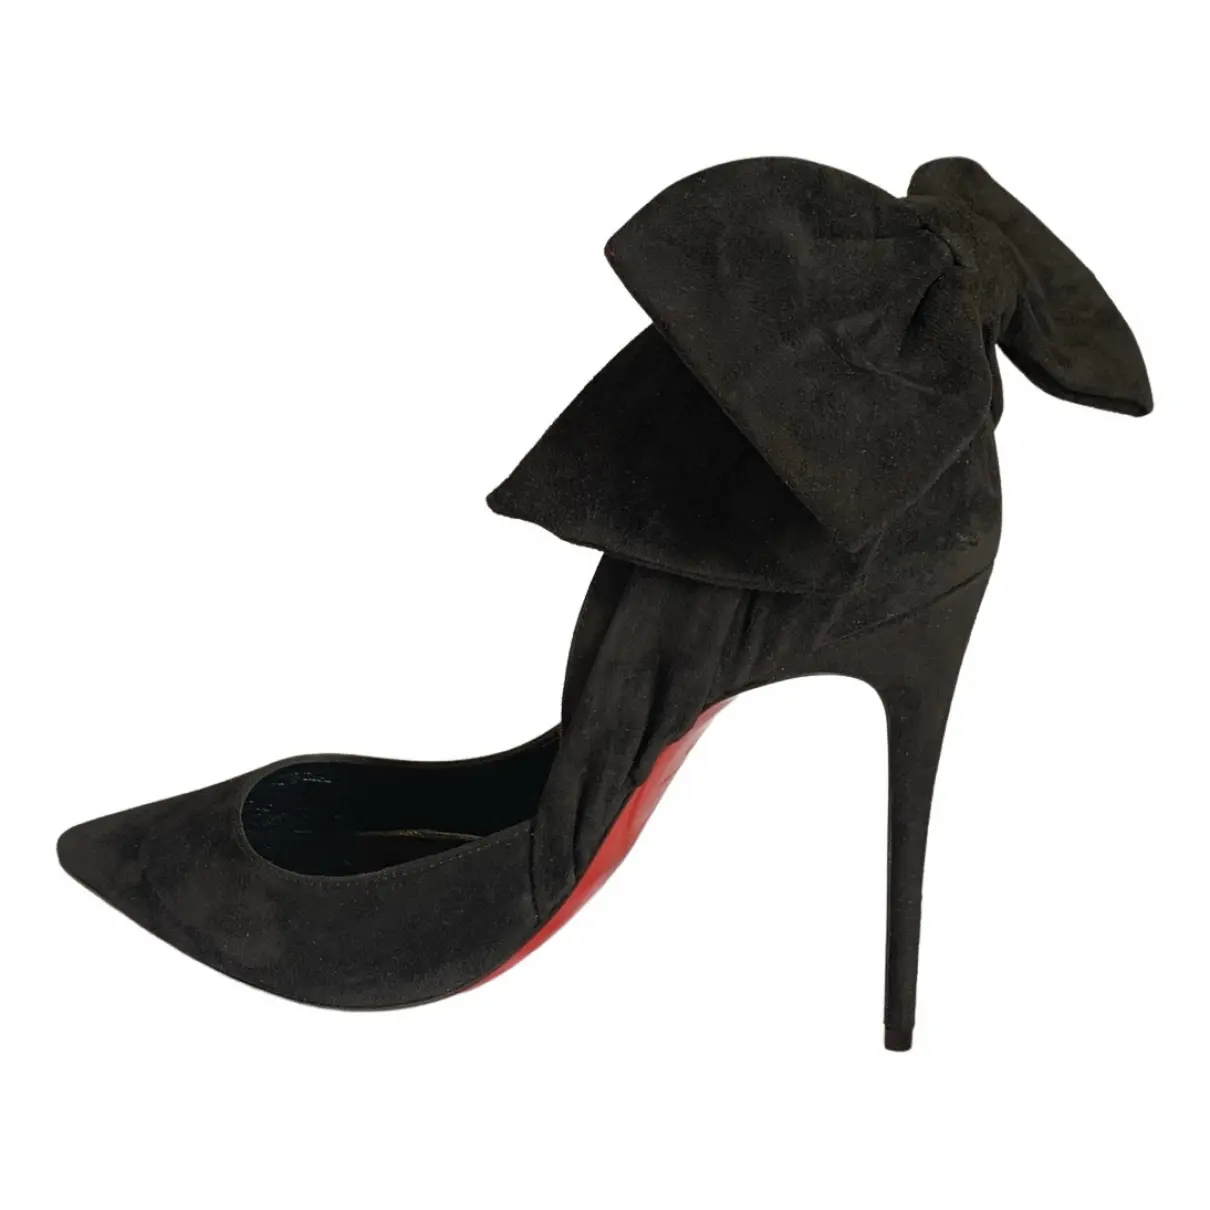 Velvet heels Christian Louboutin